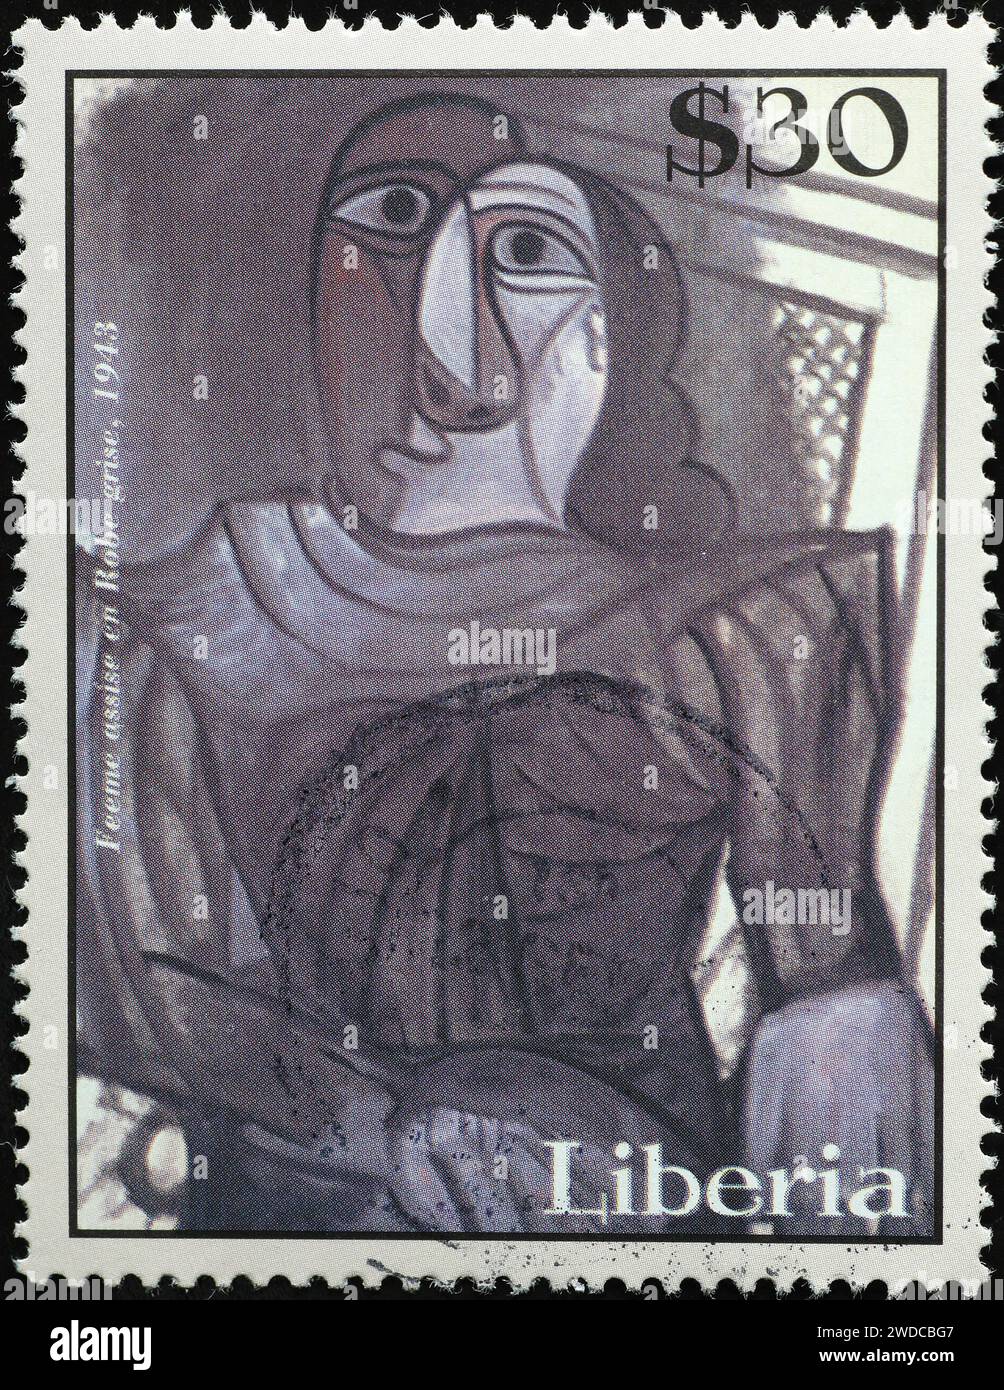 Portrait d'une femme par Picasso sur timbre-poste Banque D'Images